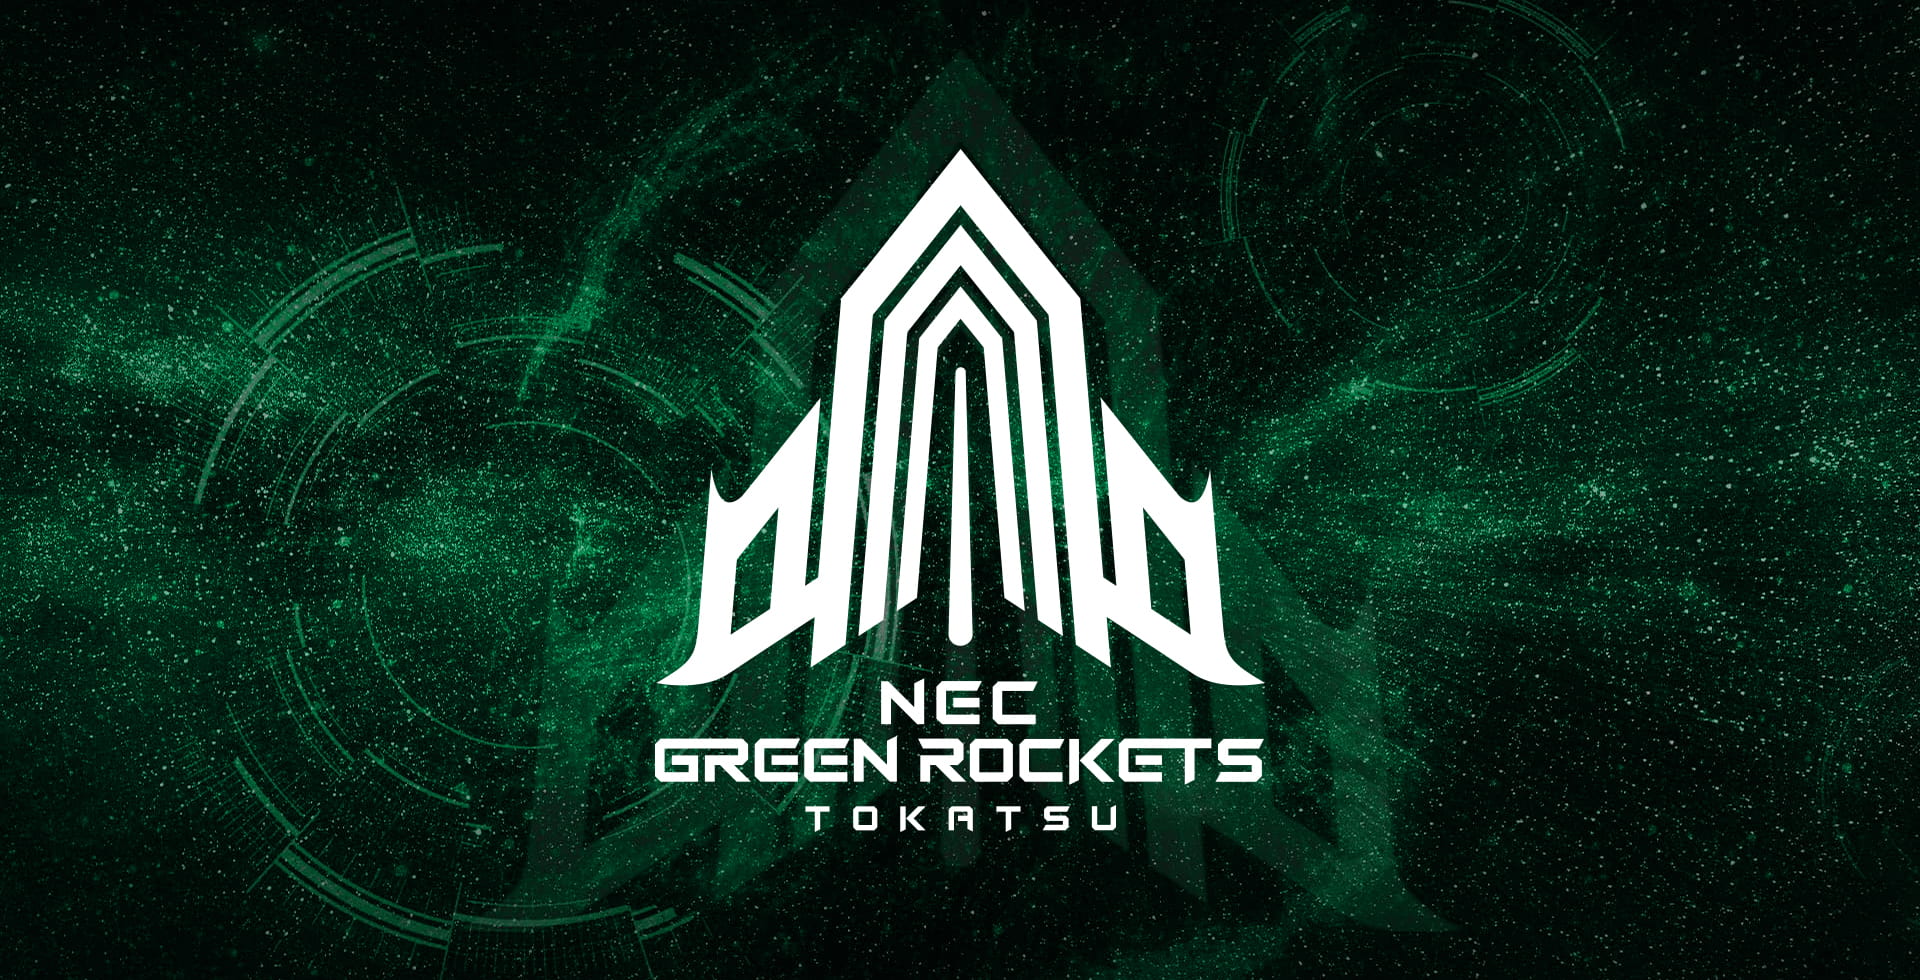 NEC GREEN ROCKETS TOKATSU | NECグリーンロケッツ東葛公式サイト